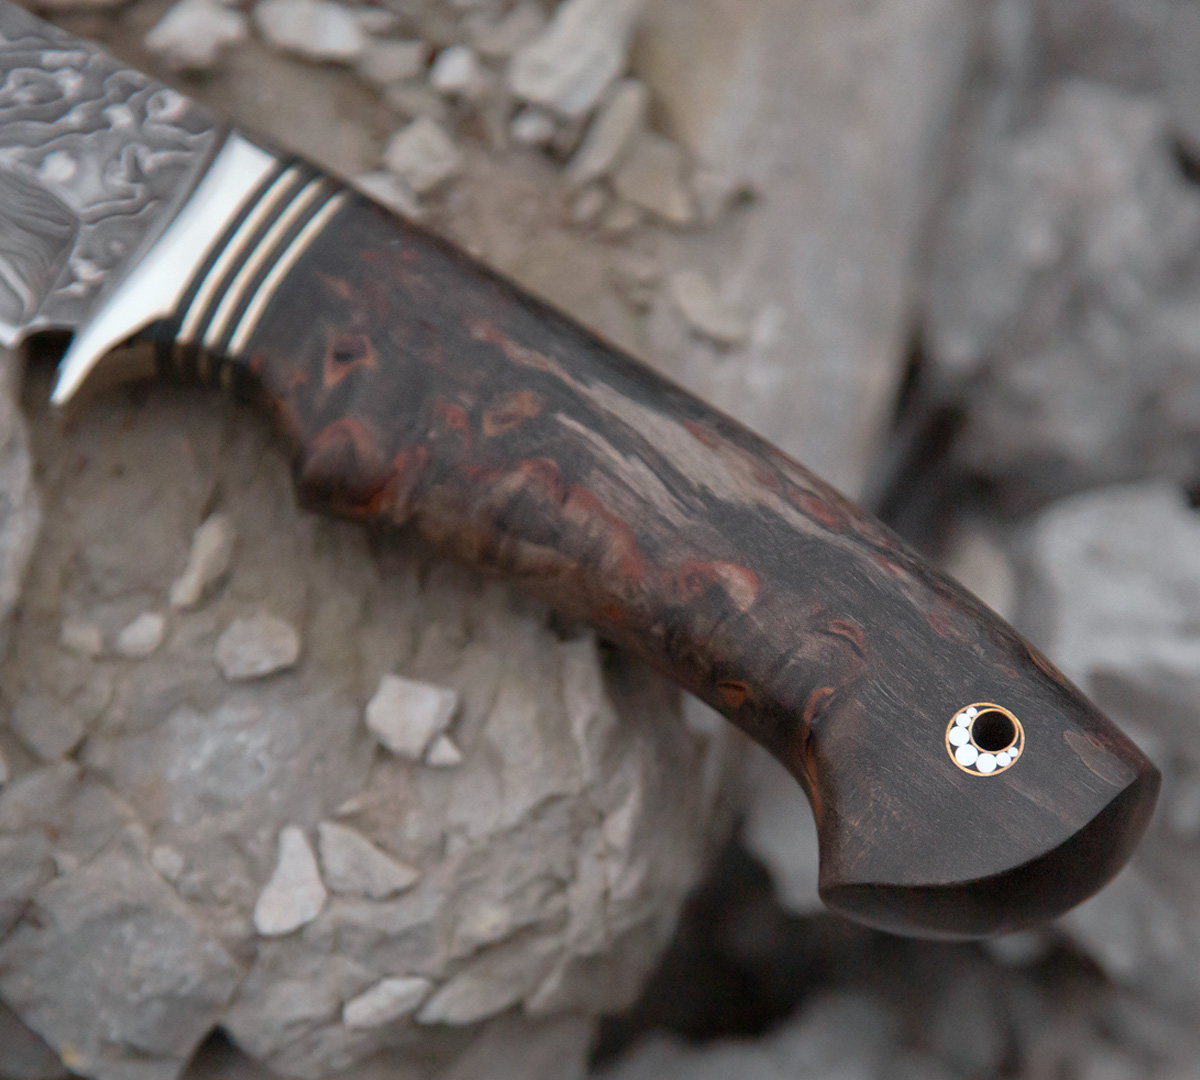 Нож Скандинав из ламинированной стали